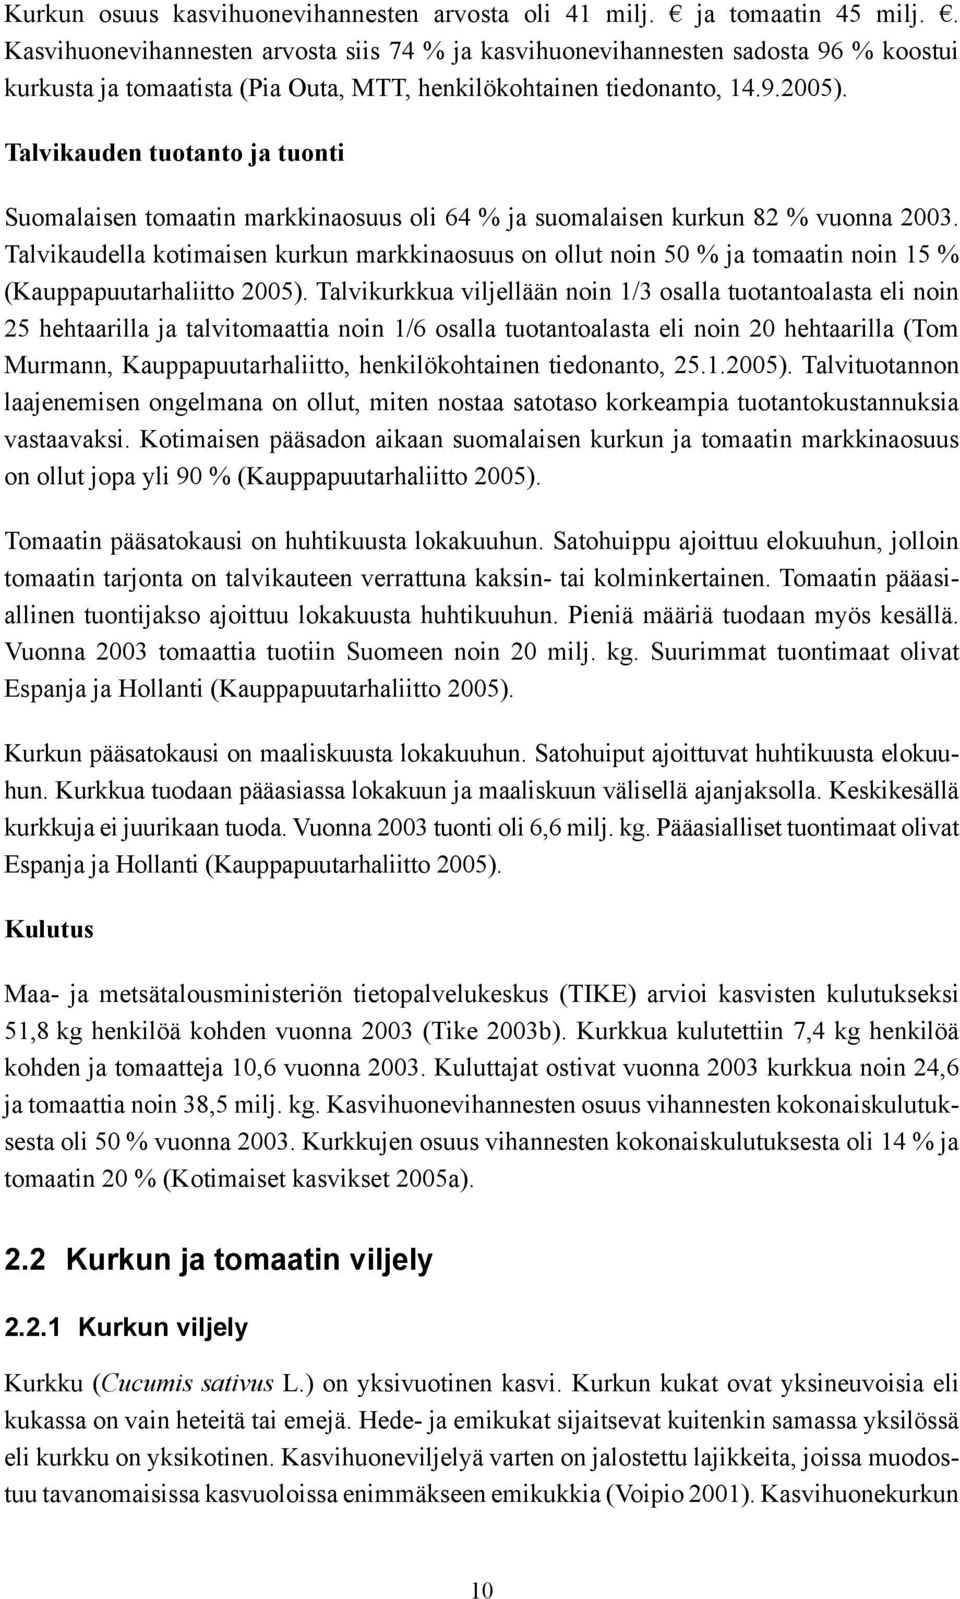 Talvikauden tuotanto ja tuonti Suomalaisen tomaatin markkinaosuus oli 64 % ja suomalaisen kurkun 82 % vuonna 2003.